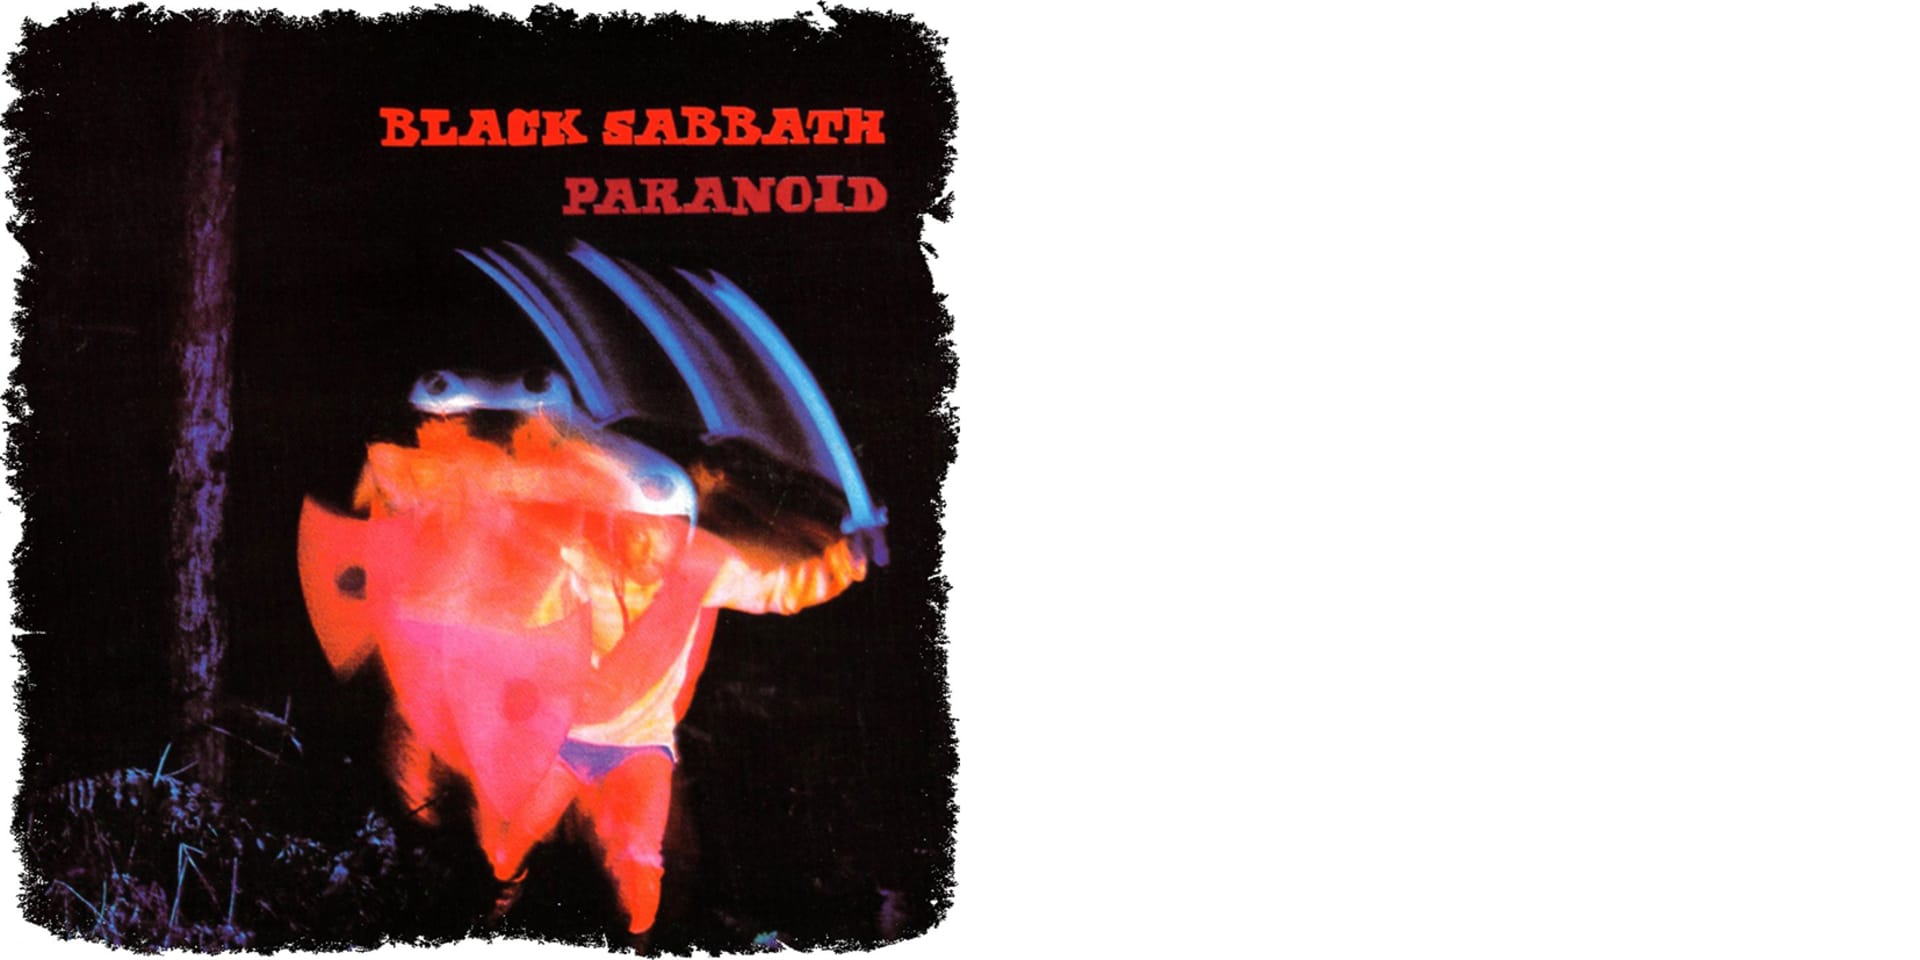 Paranoid, 1970